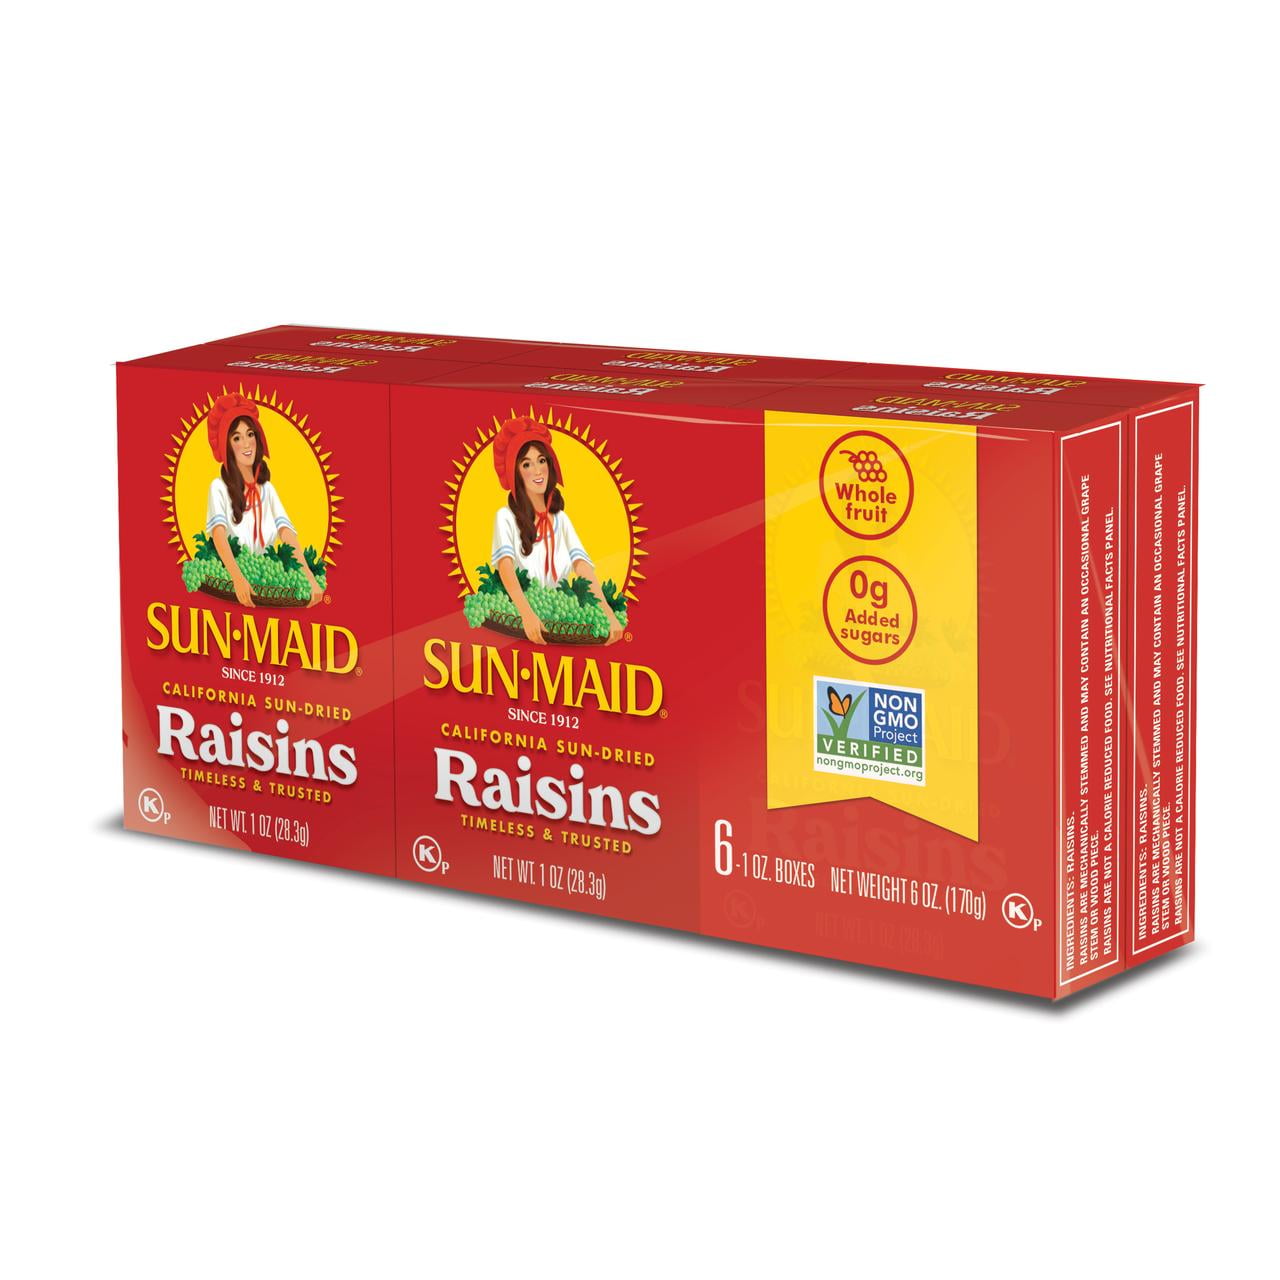 Sun-Maid California Sun-Dried Raisins, Dried Fruit Lunch Box Snack, 1 oz, 6 Count